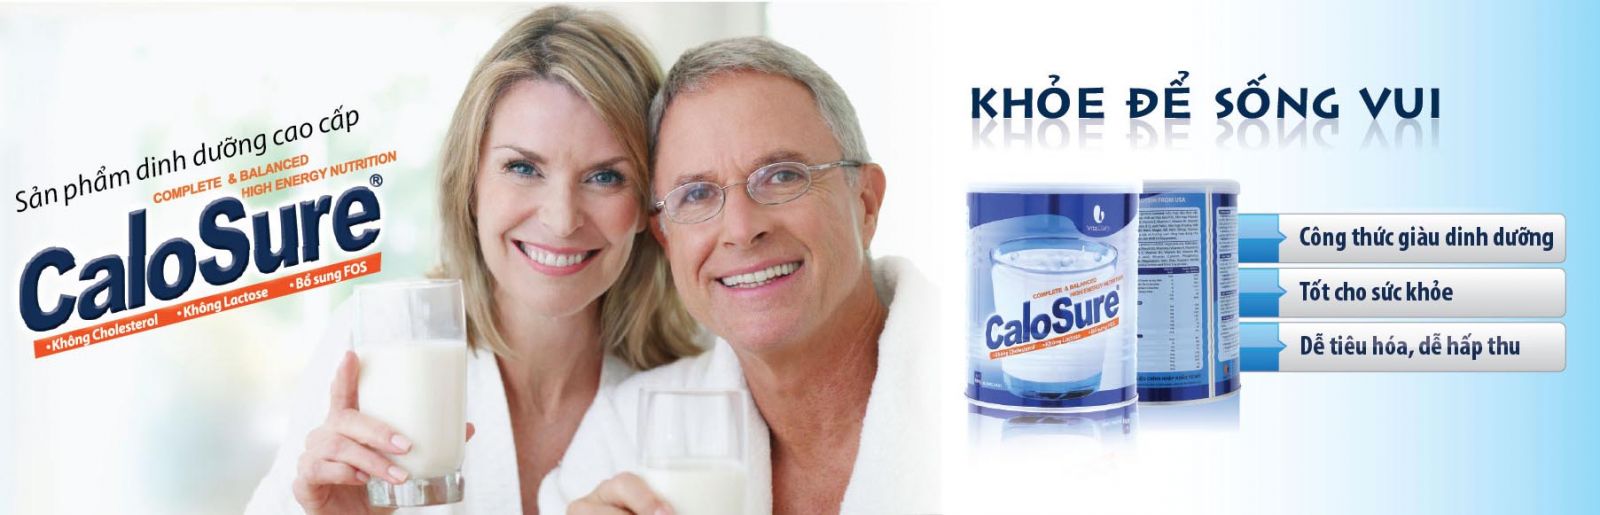 Sữa calosure – sản phẩm bổ sung dinh dưỡng cần thiết cho người ốm7